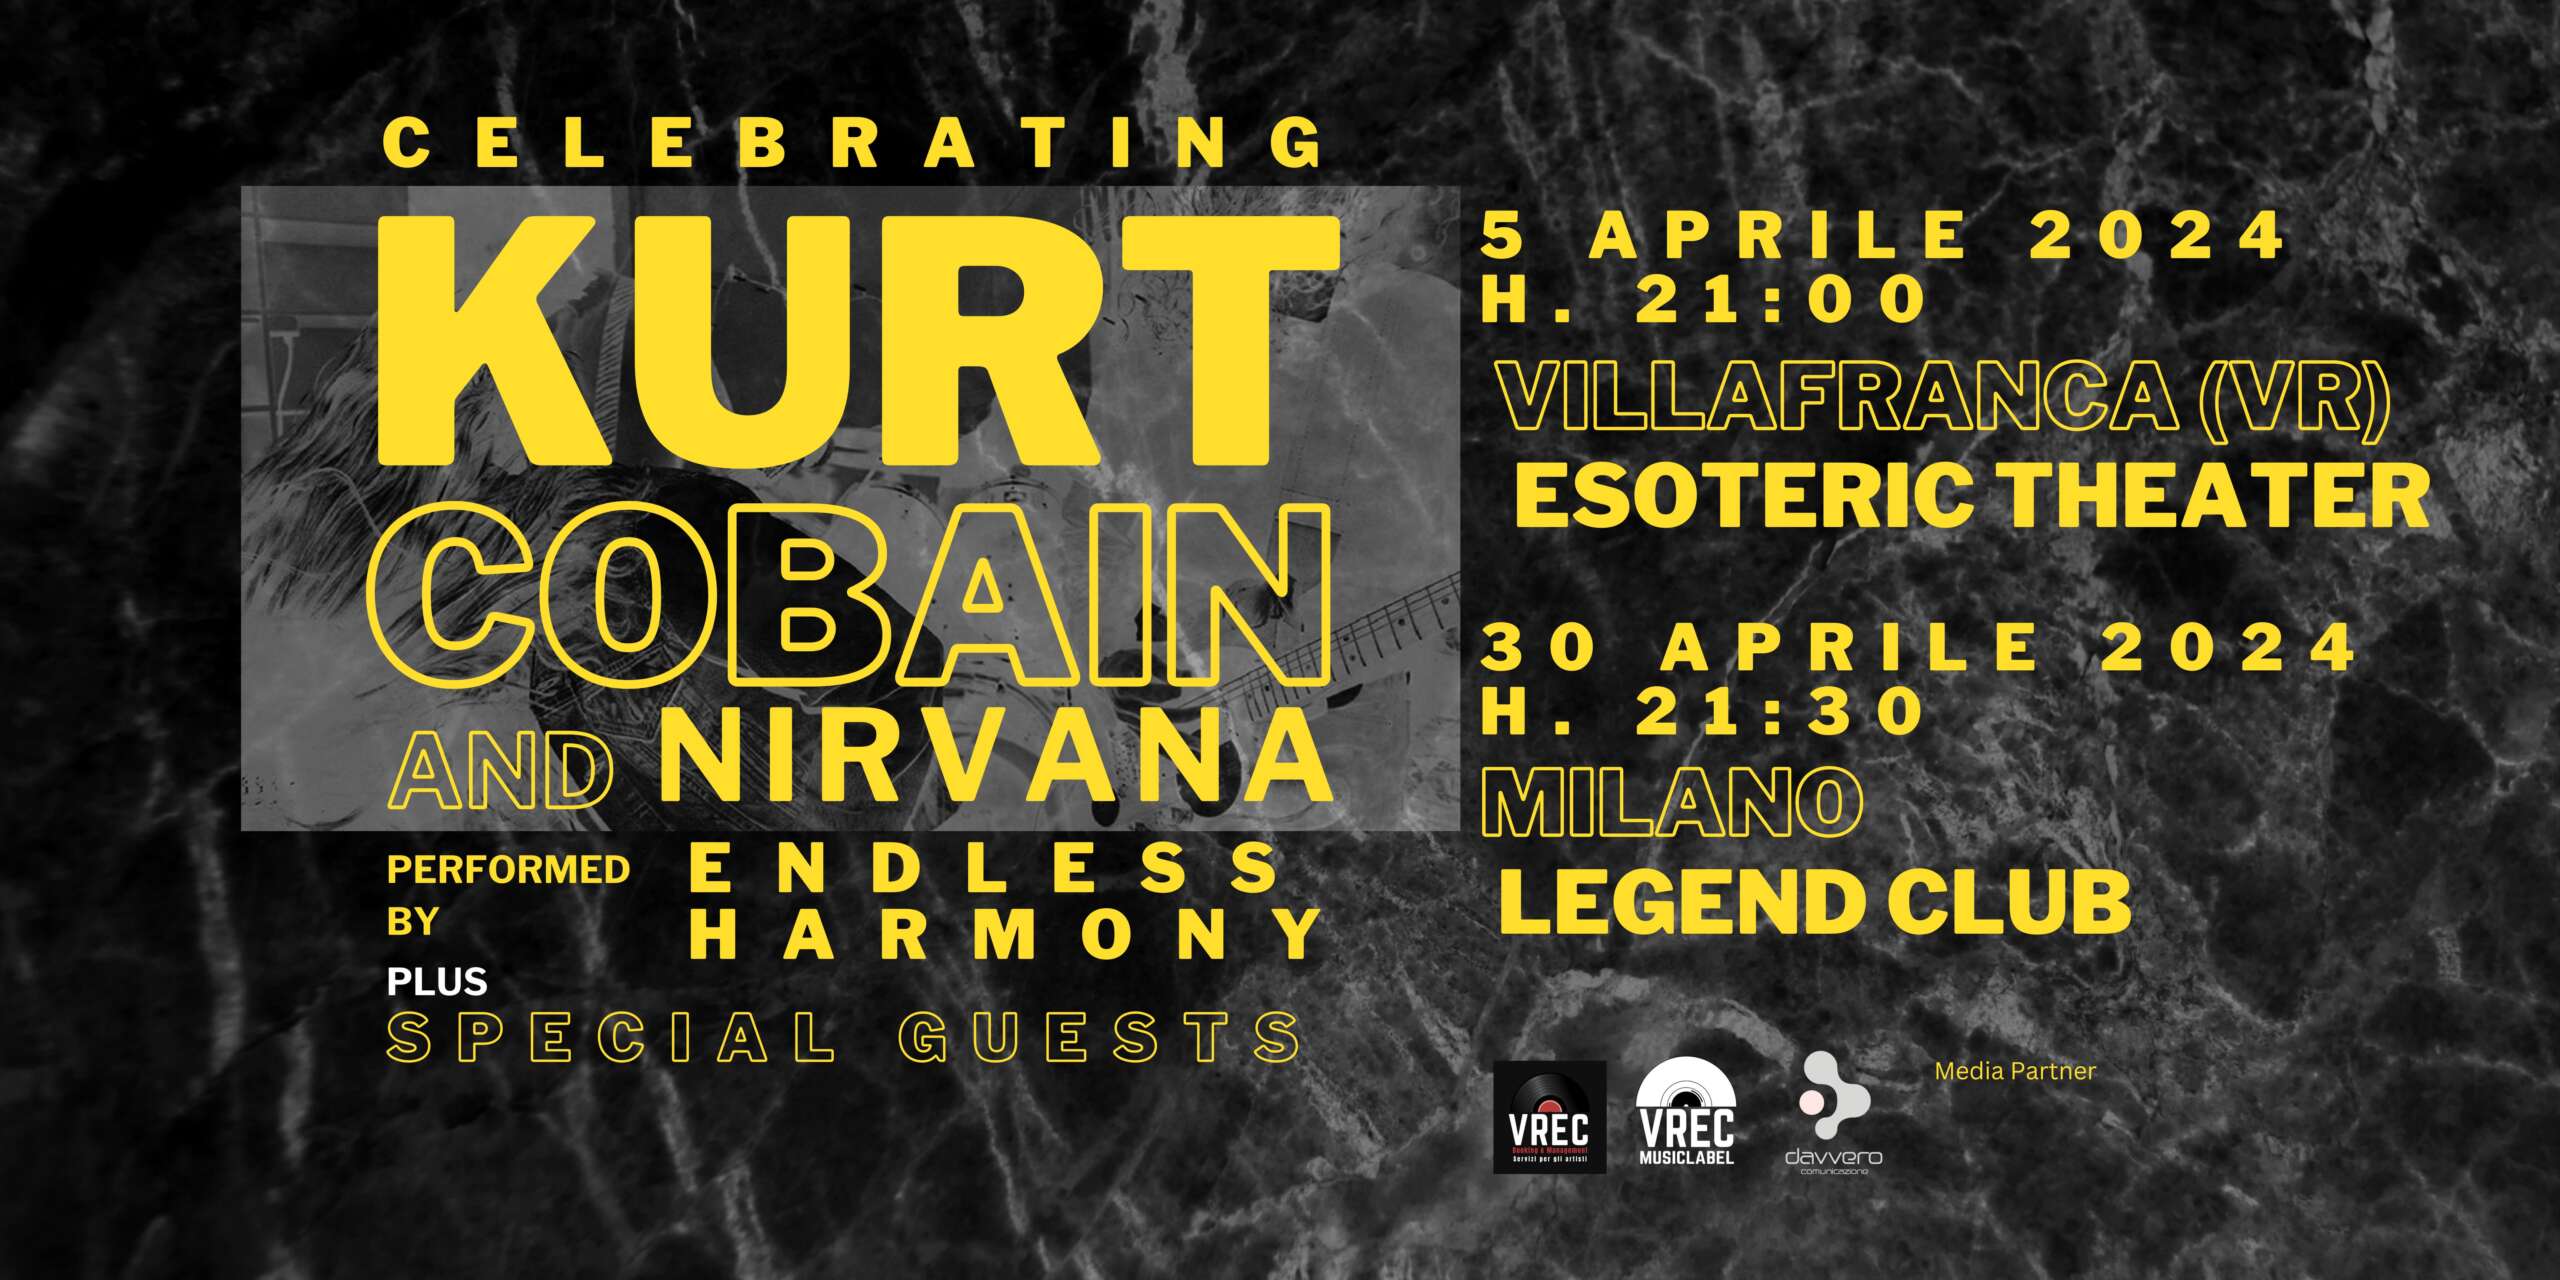 CELEBRATING KURT COBAIN AND NIRVANA – due spettacoli “evento” il 5 e 30 aprile a Villafranca (VR) e Milano